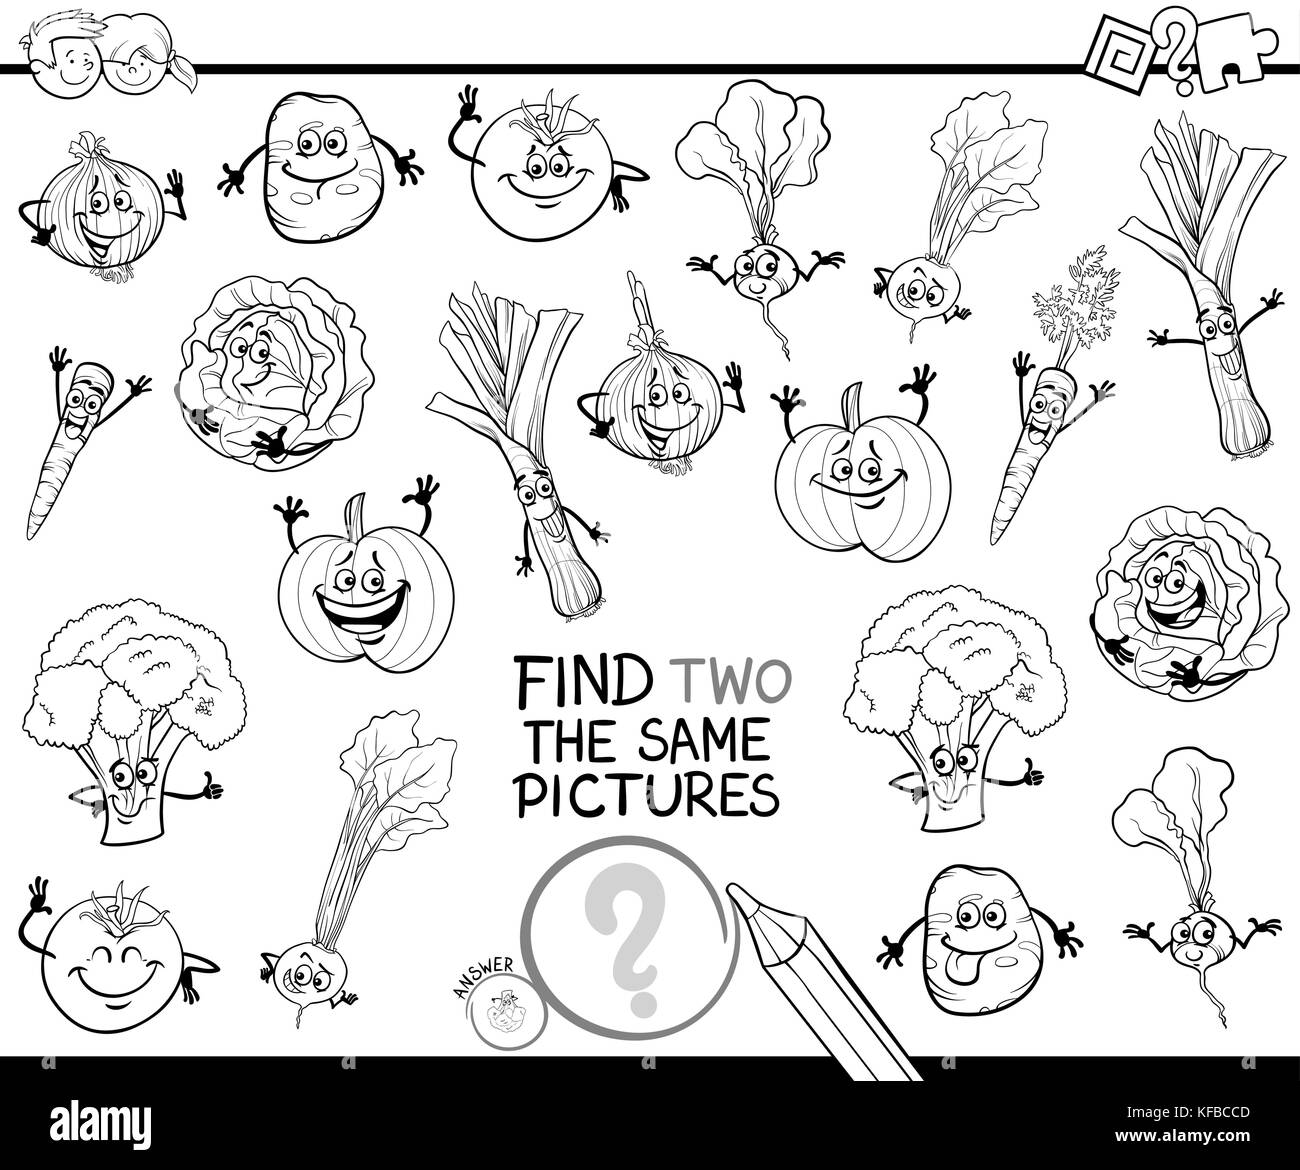 Bianco e nero cartoon illustrazione di trovare due immagini identiche gioco educativo per bambini con caratteri vegetali libro da colorare Illustrazione Vettoriale